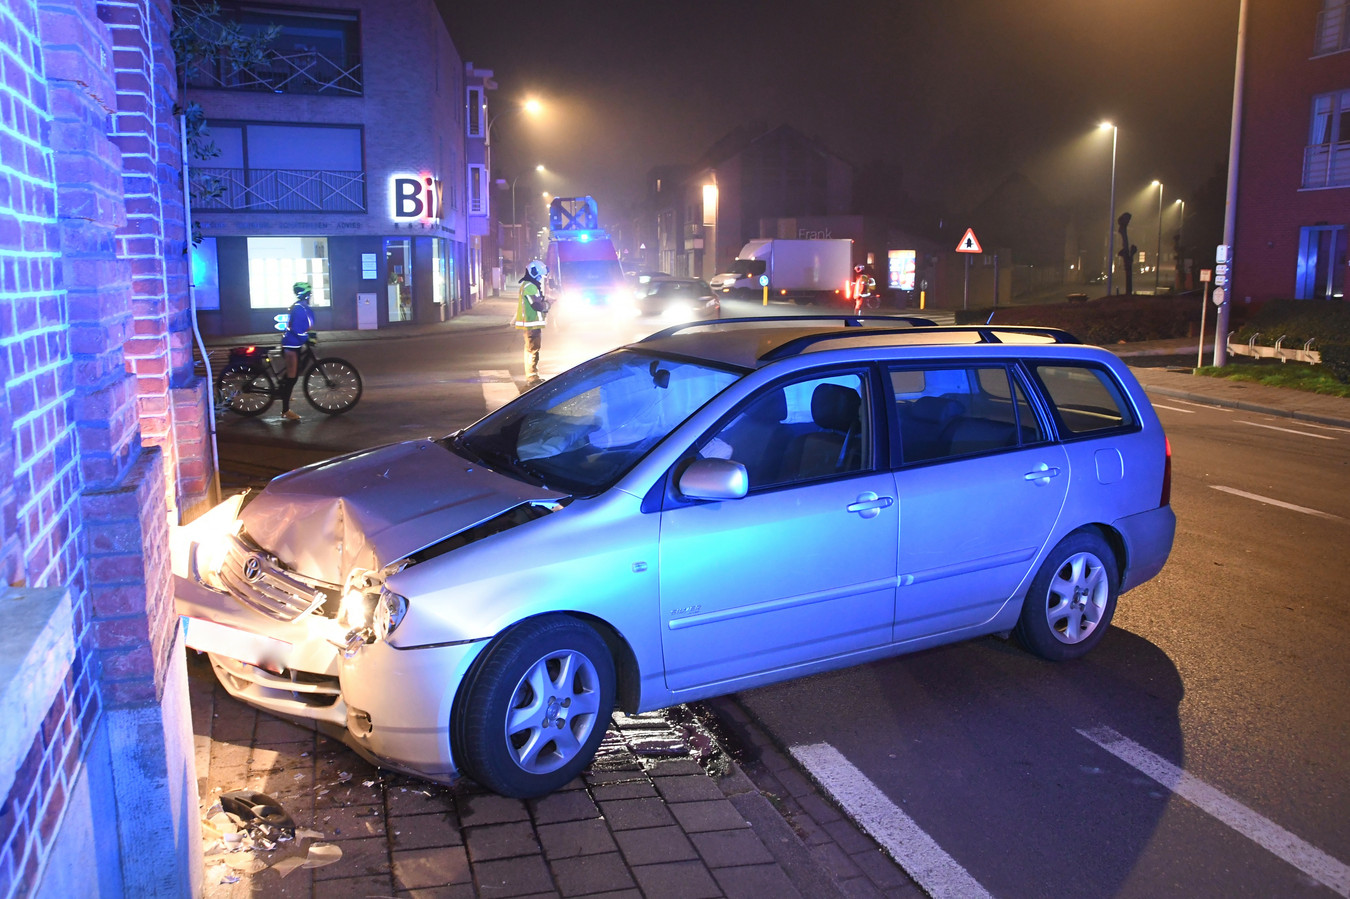 Na de botsing botste de Toyota Corolla tegen de gevel en voordeur van een woning op de hoek.